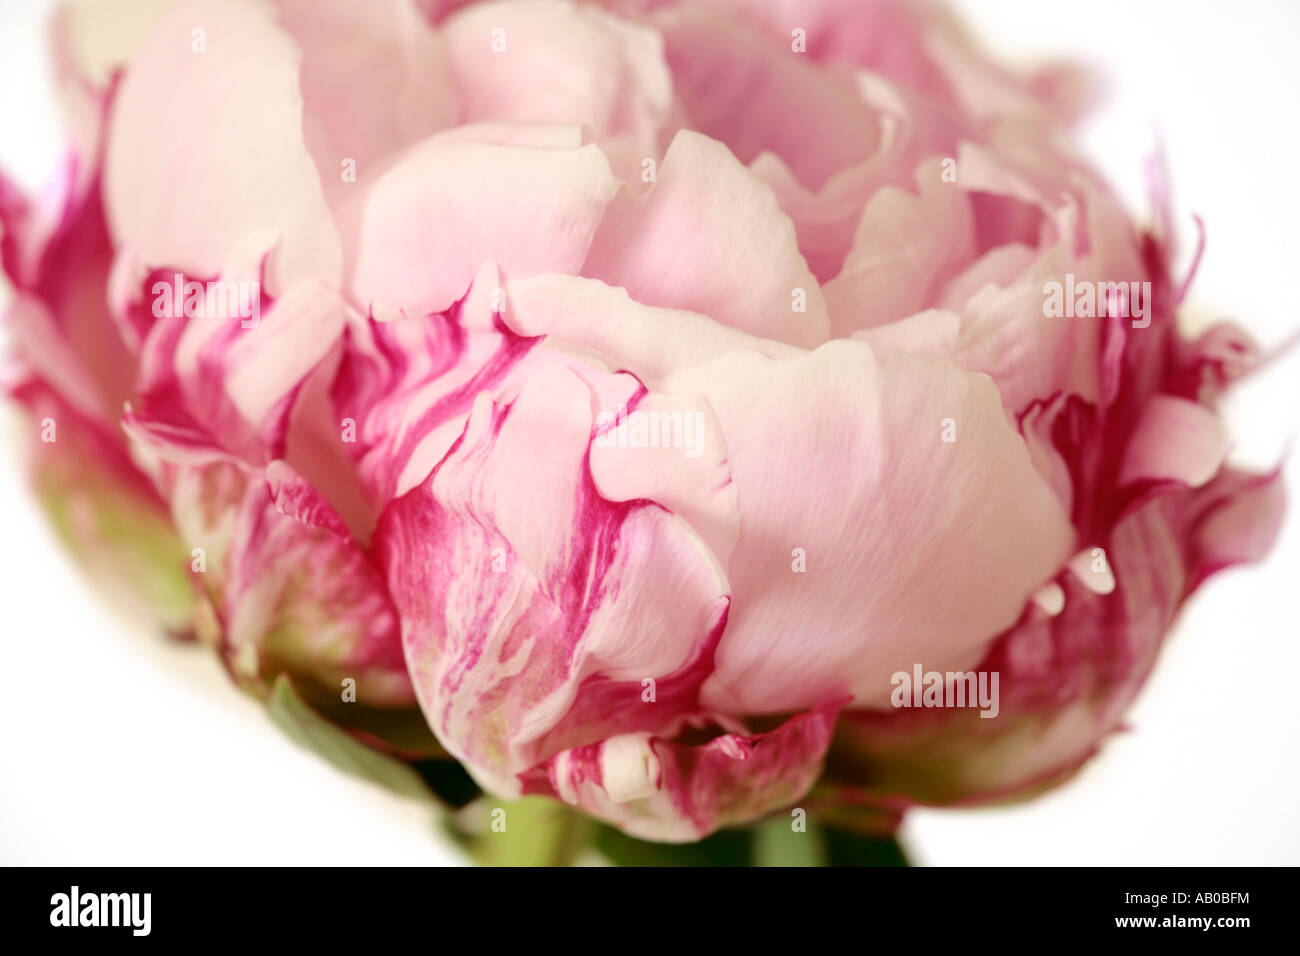 Gros plan sur une seule pivoine rose pâle en fleurs en été Banque D'Images